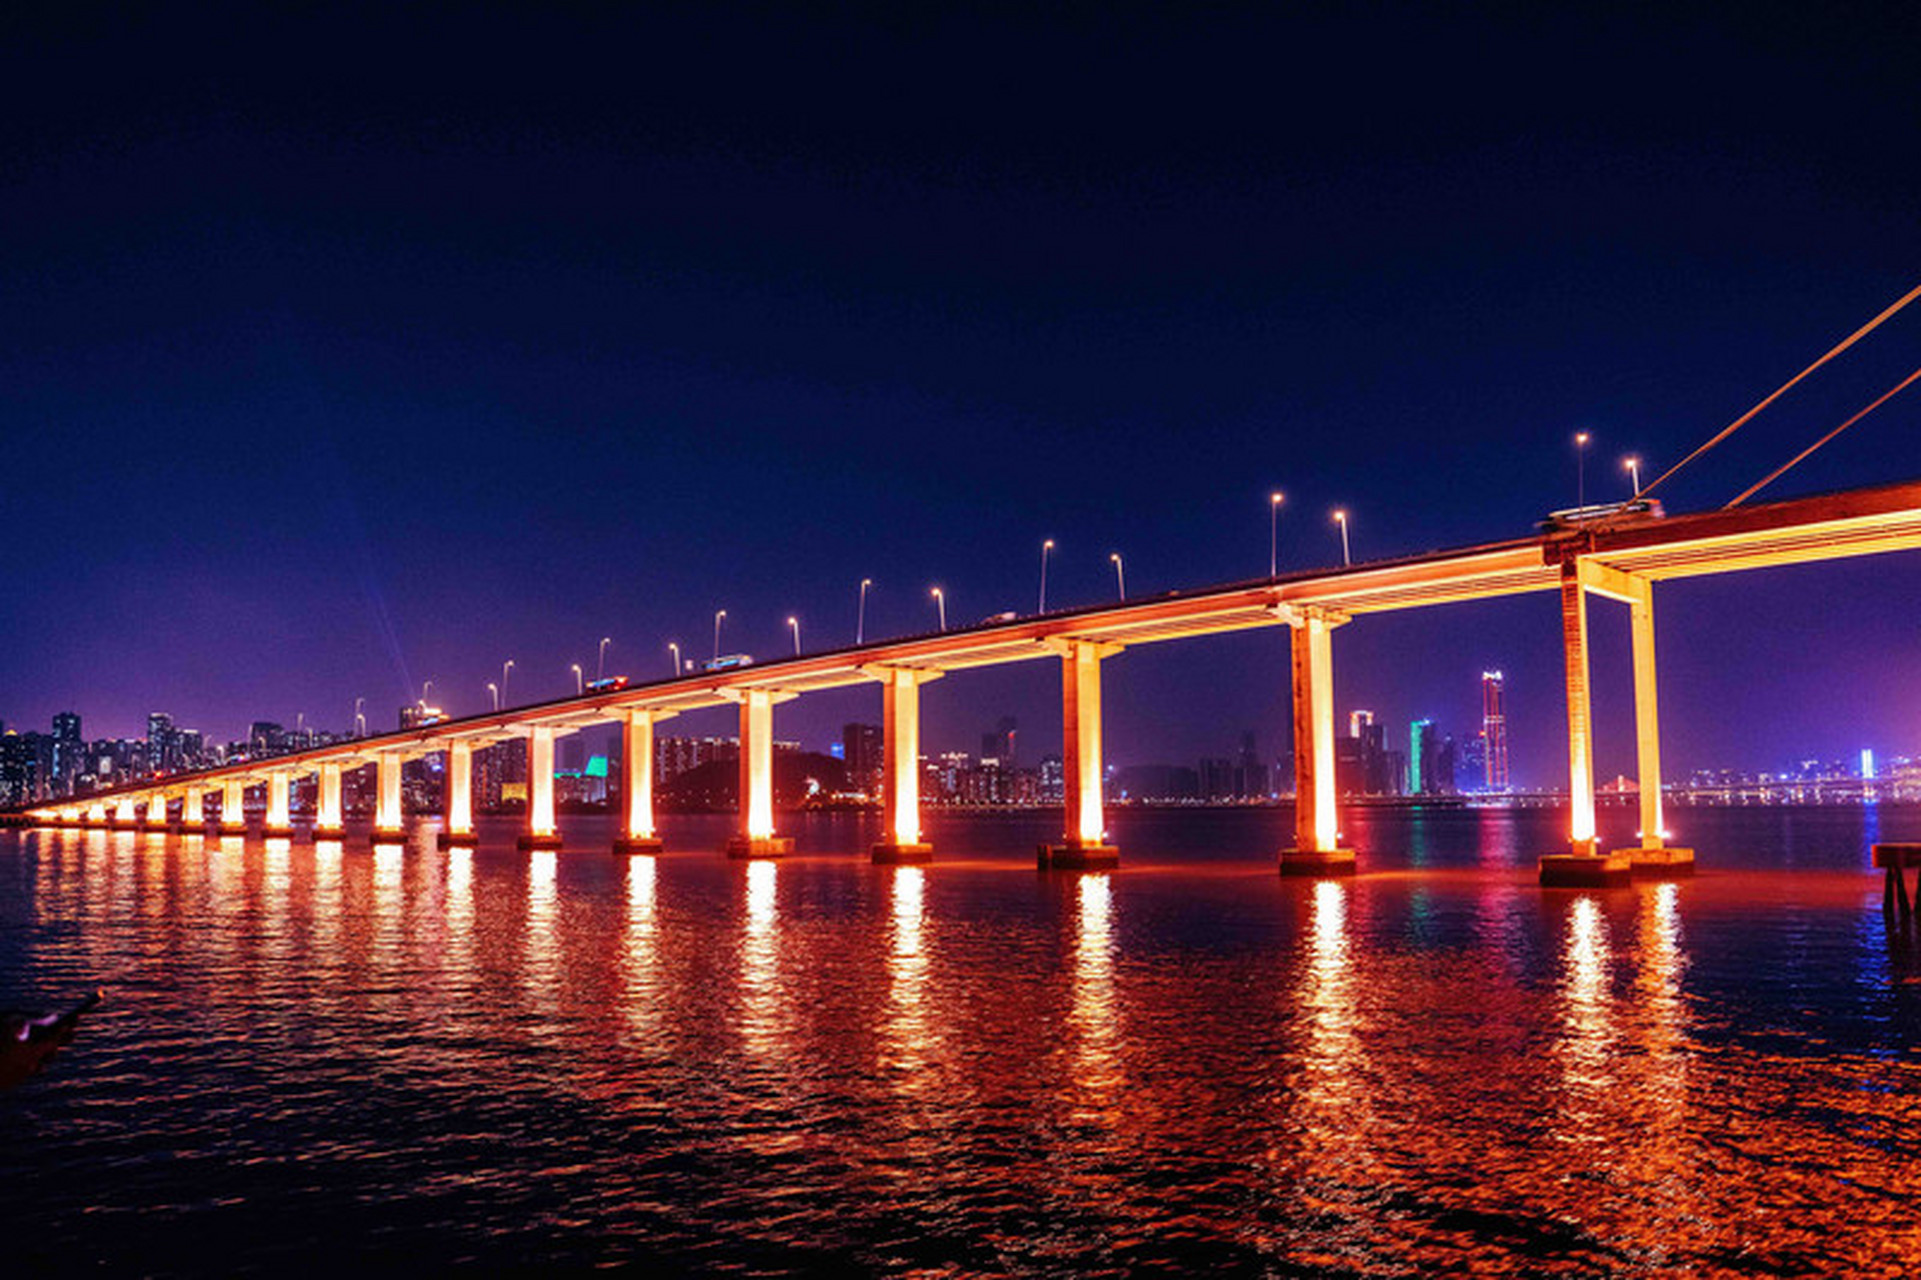 珠海九洲邮轮带你穿越港珠澳大桥的震撼美景,品味澳门环岛的迷人风情